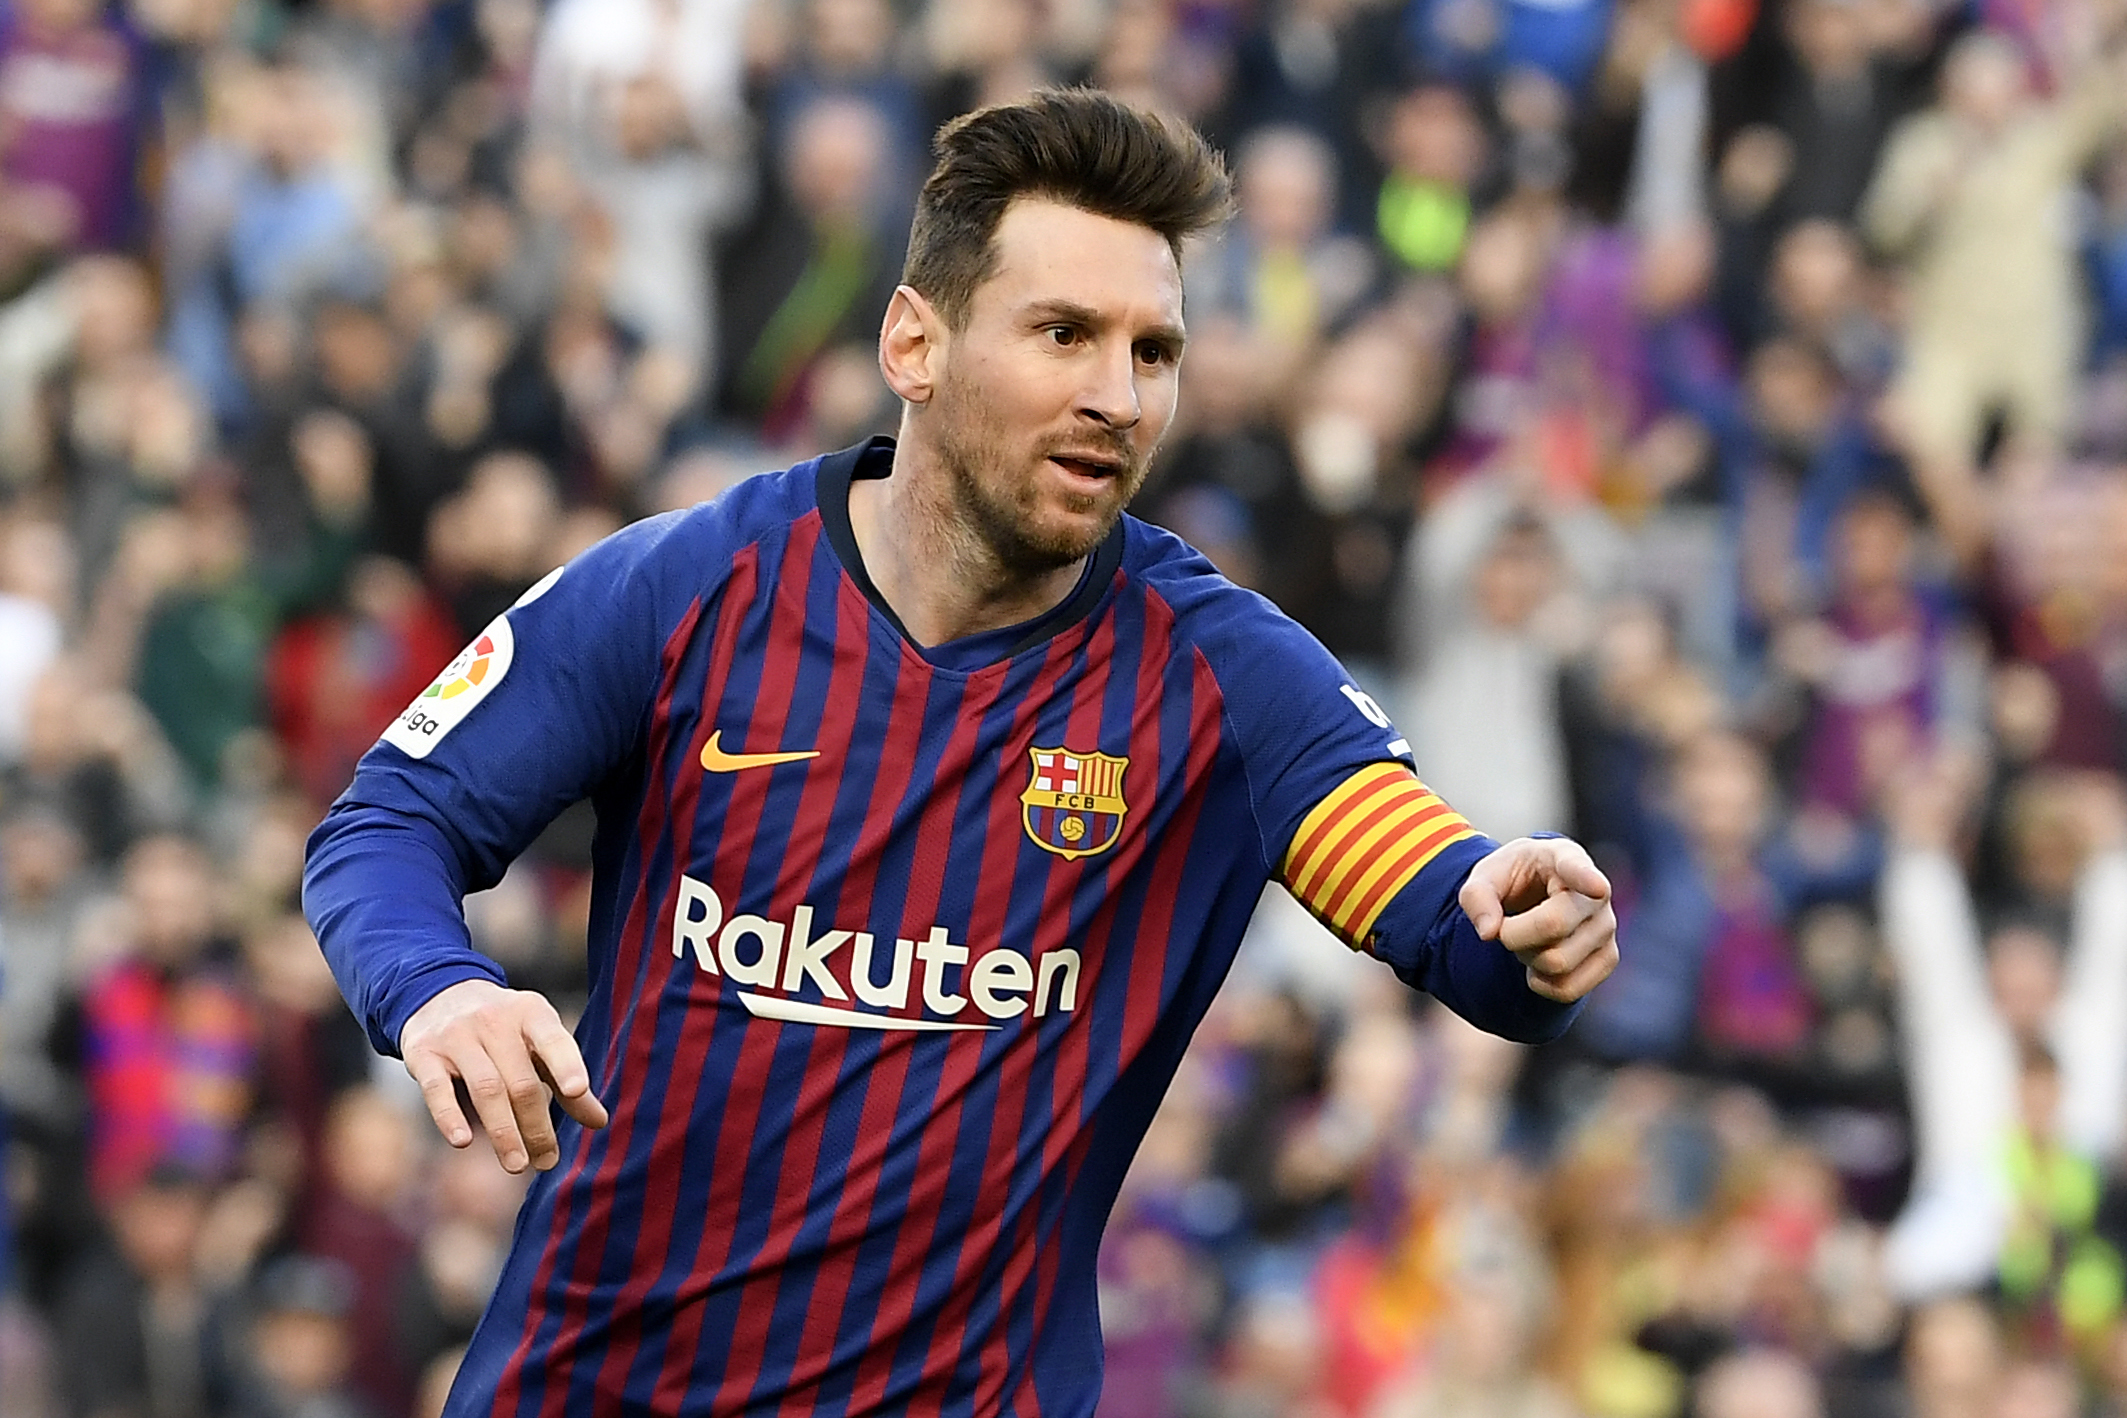 La magia de Lionel Messi se hizo presente con un gol de tiro libre a lo Panenka en el que un defensa del Espanyol terminó enviando el balón al fondo de la portería. (Foto Prensa Libre: AFP)